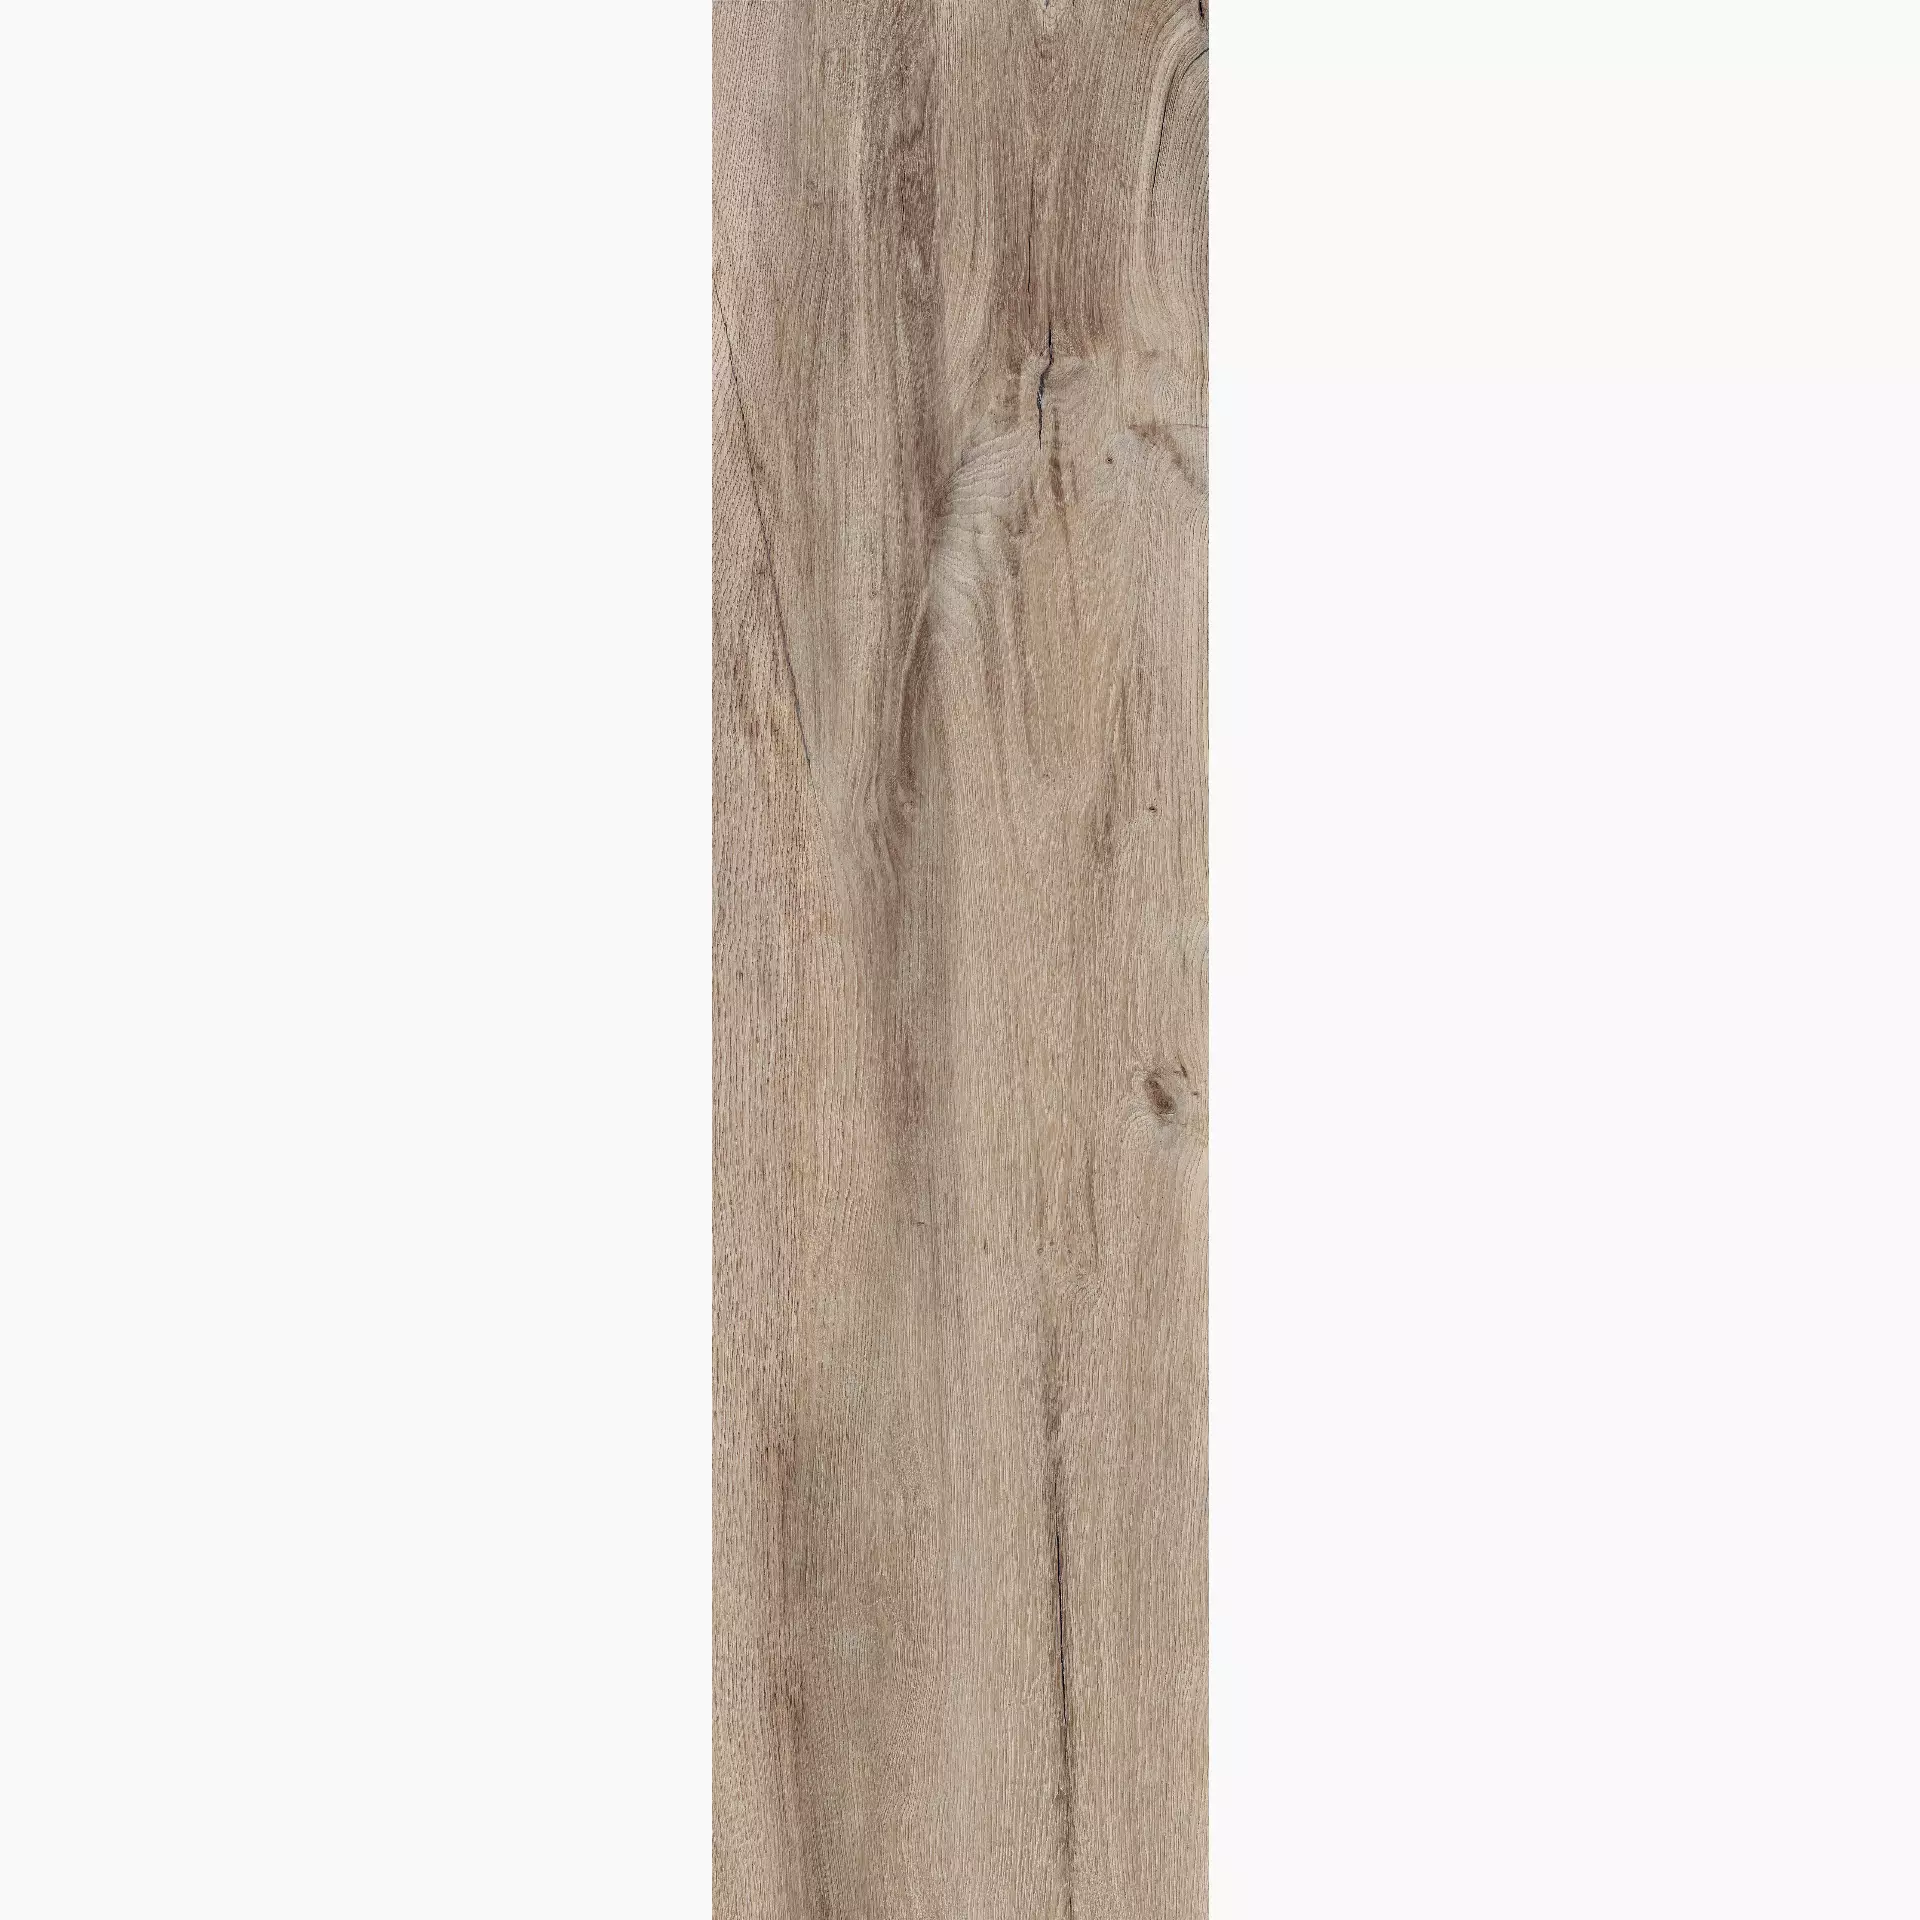 Flaviker X20 Beige Outdoor Nordik Wood PF60004815 30x120cm rectified 20mm